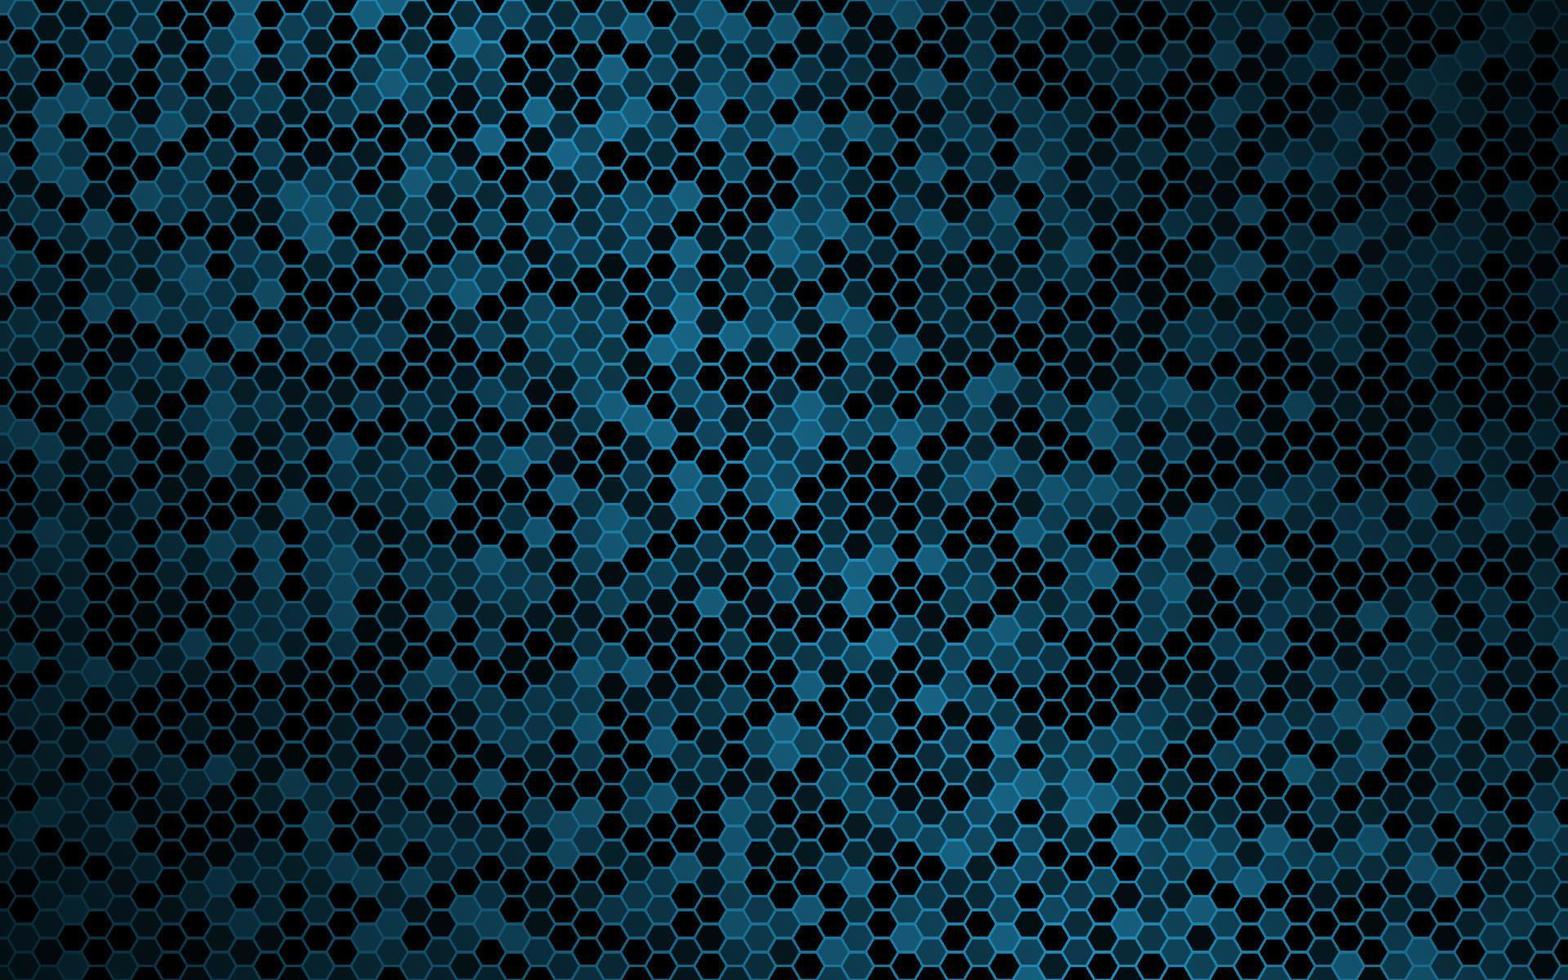 fundo vector azul escuro com malha hexagonal. textura geométrica moderna. ilustração de design simples